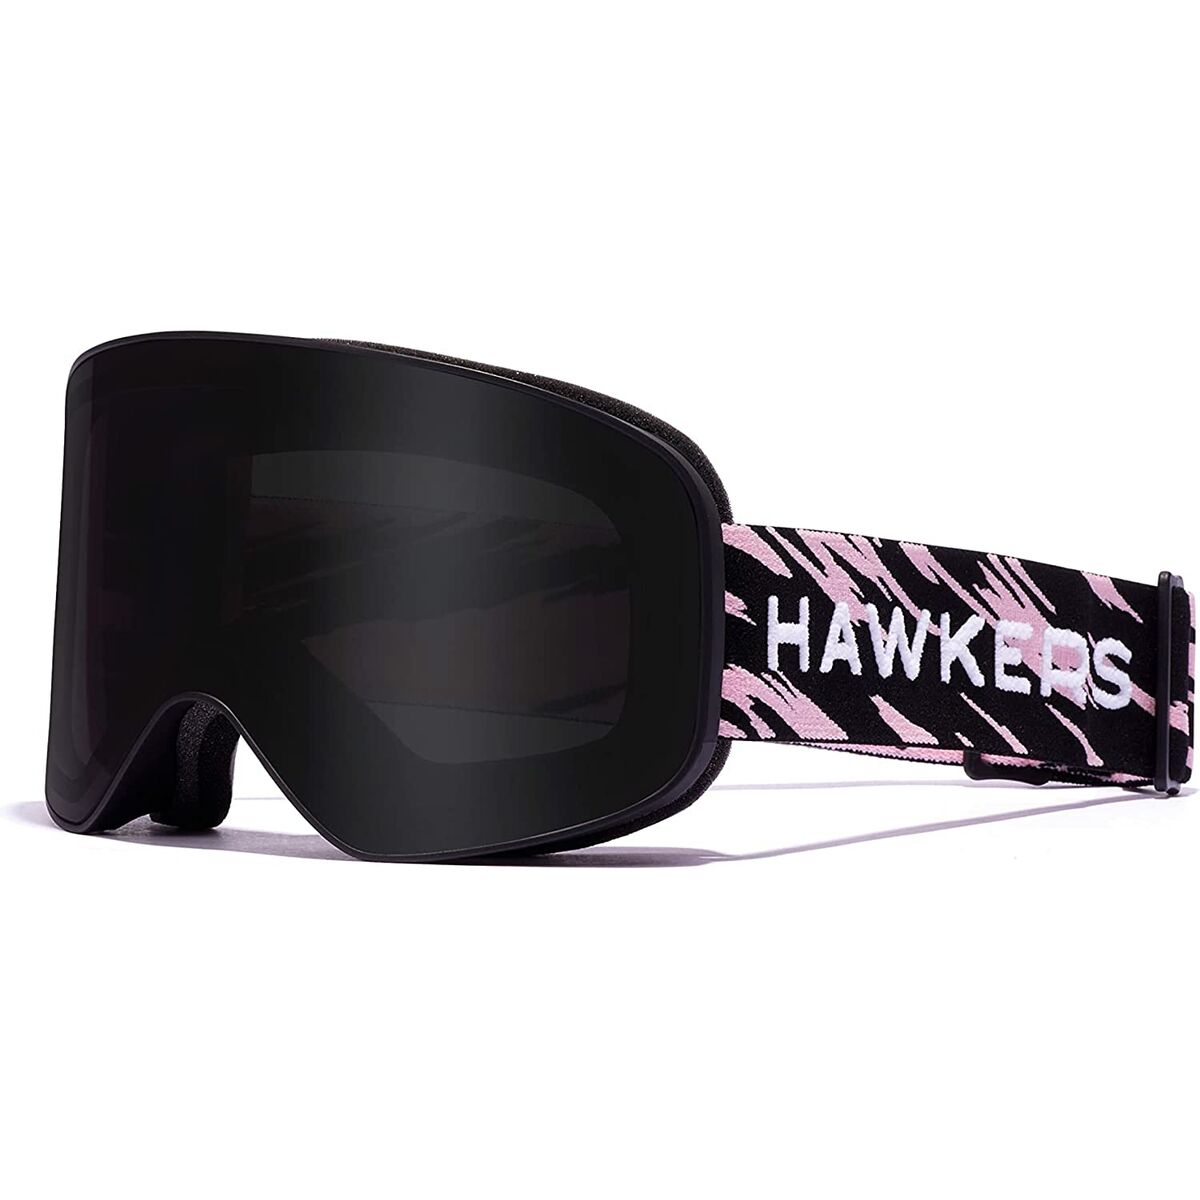 Ski Goggles Hawkers Artik Small Black Pink